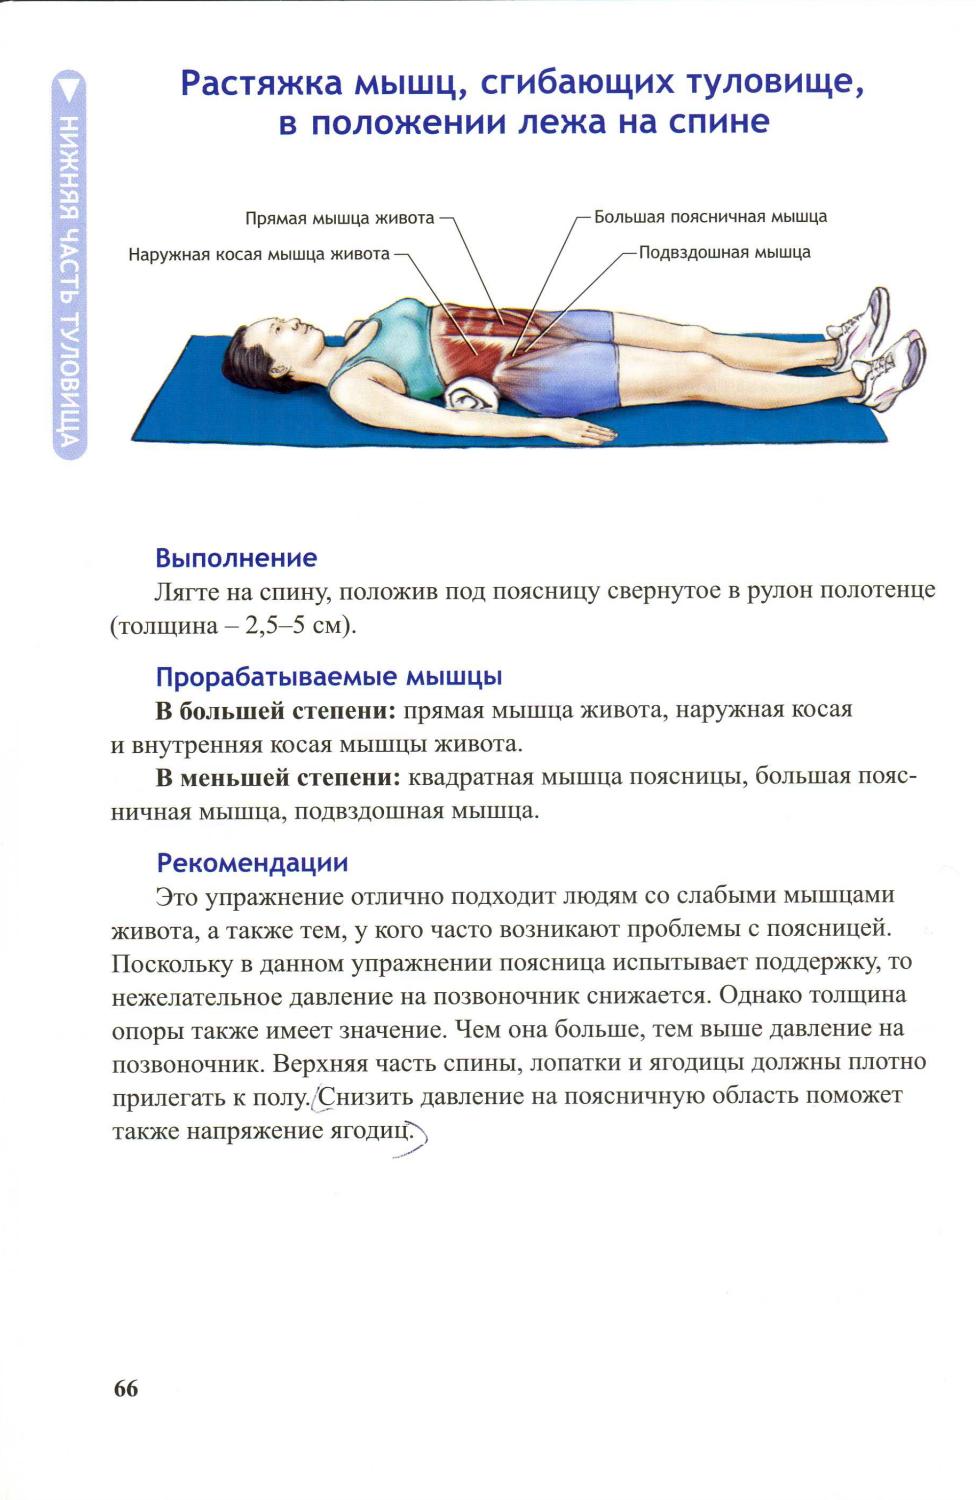 Болит позвоночник лежа. Упражнения лежа на спине. Упражнение на растяжение мышц живота. Упражнения из положения лежа на спине. Упражнения на пышцы спины Леда.